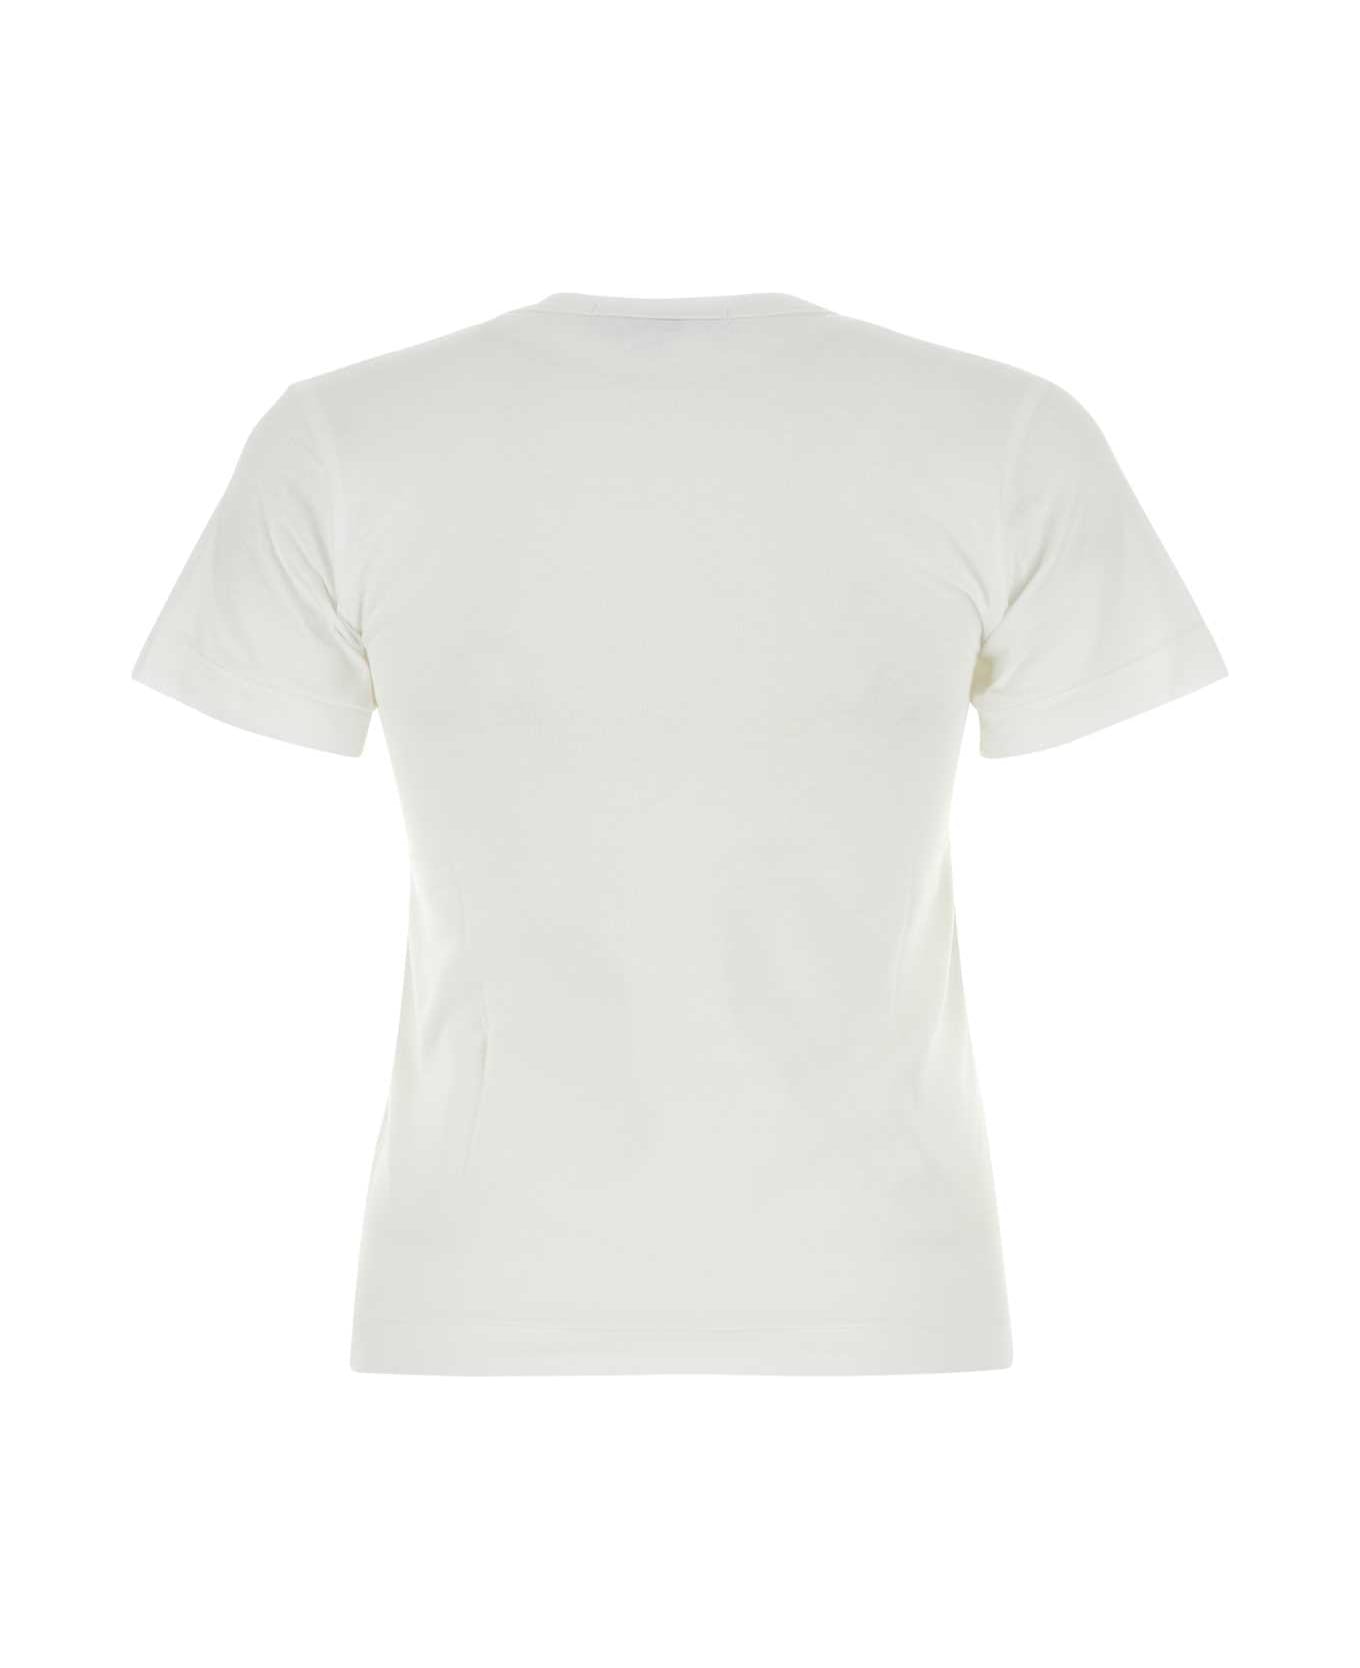 Comme des Garçons Play White Cotton T-shirt - WHITE